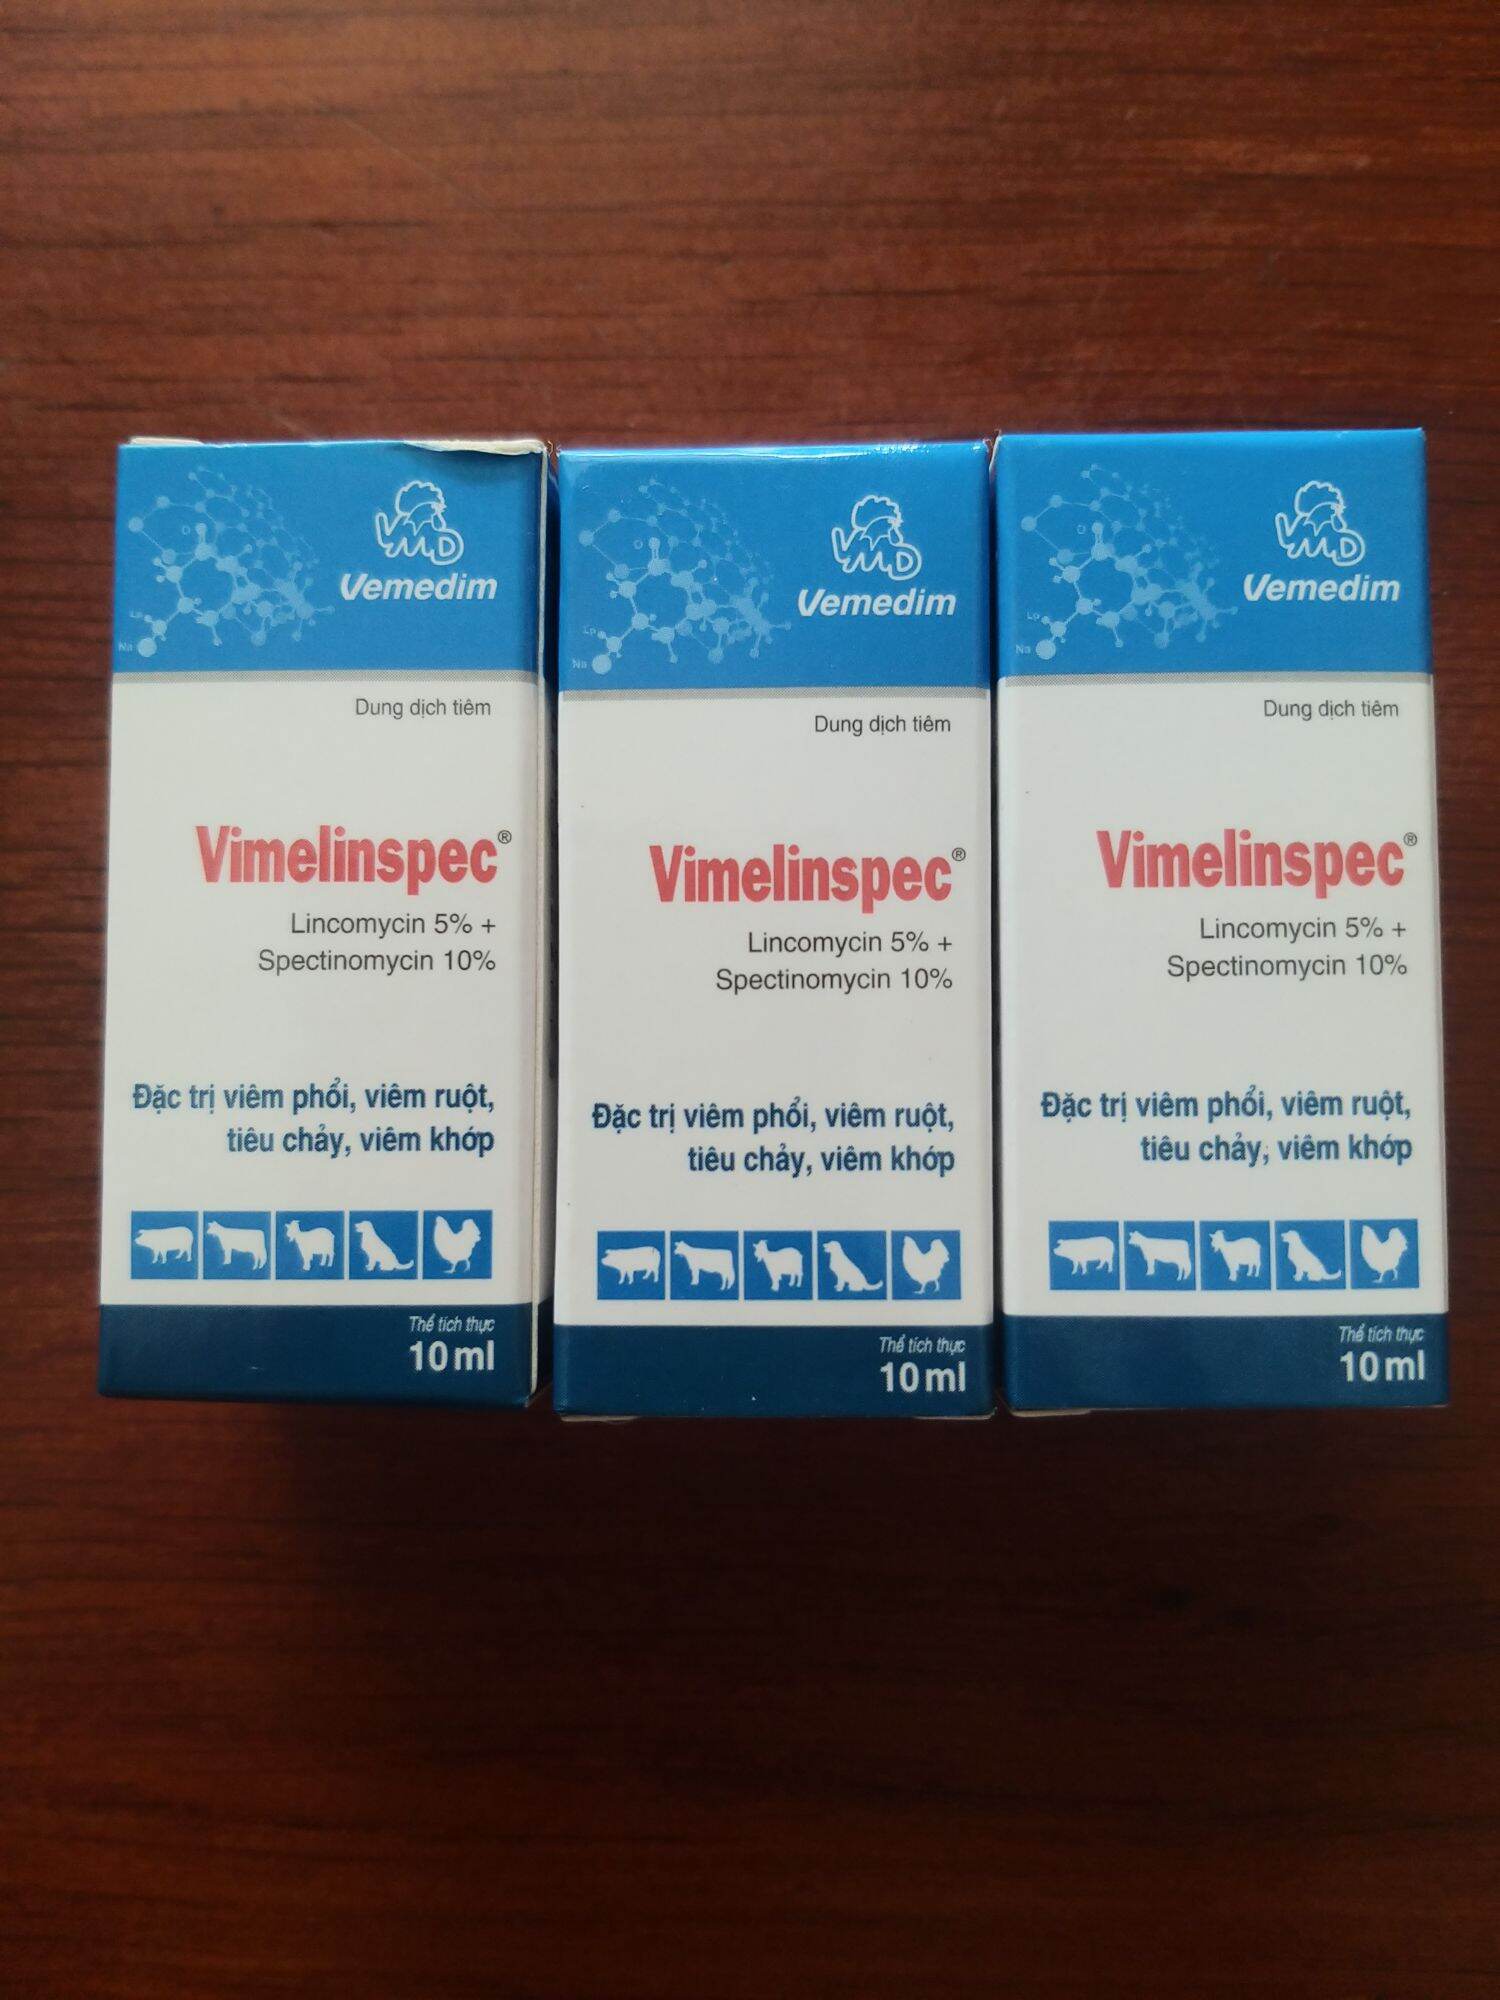 VIMELINSPEC 10ml, viêm phổi, viêm ruột, tiêu chảy, viêm khớp